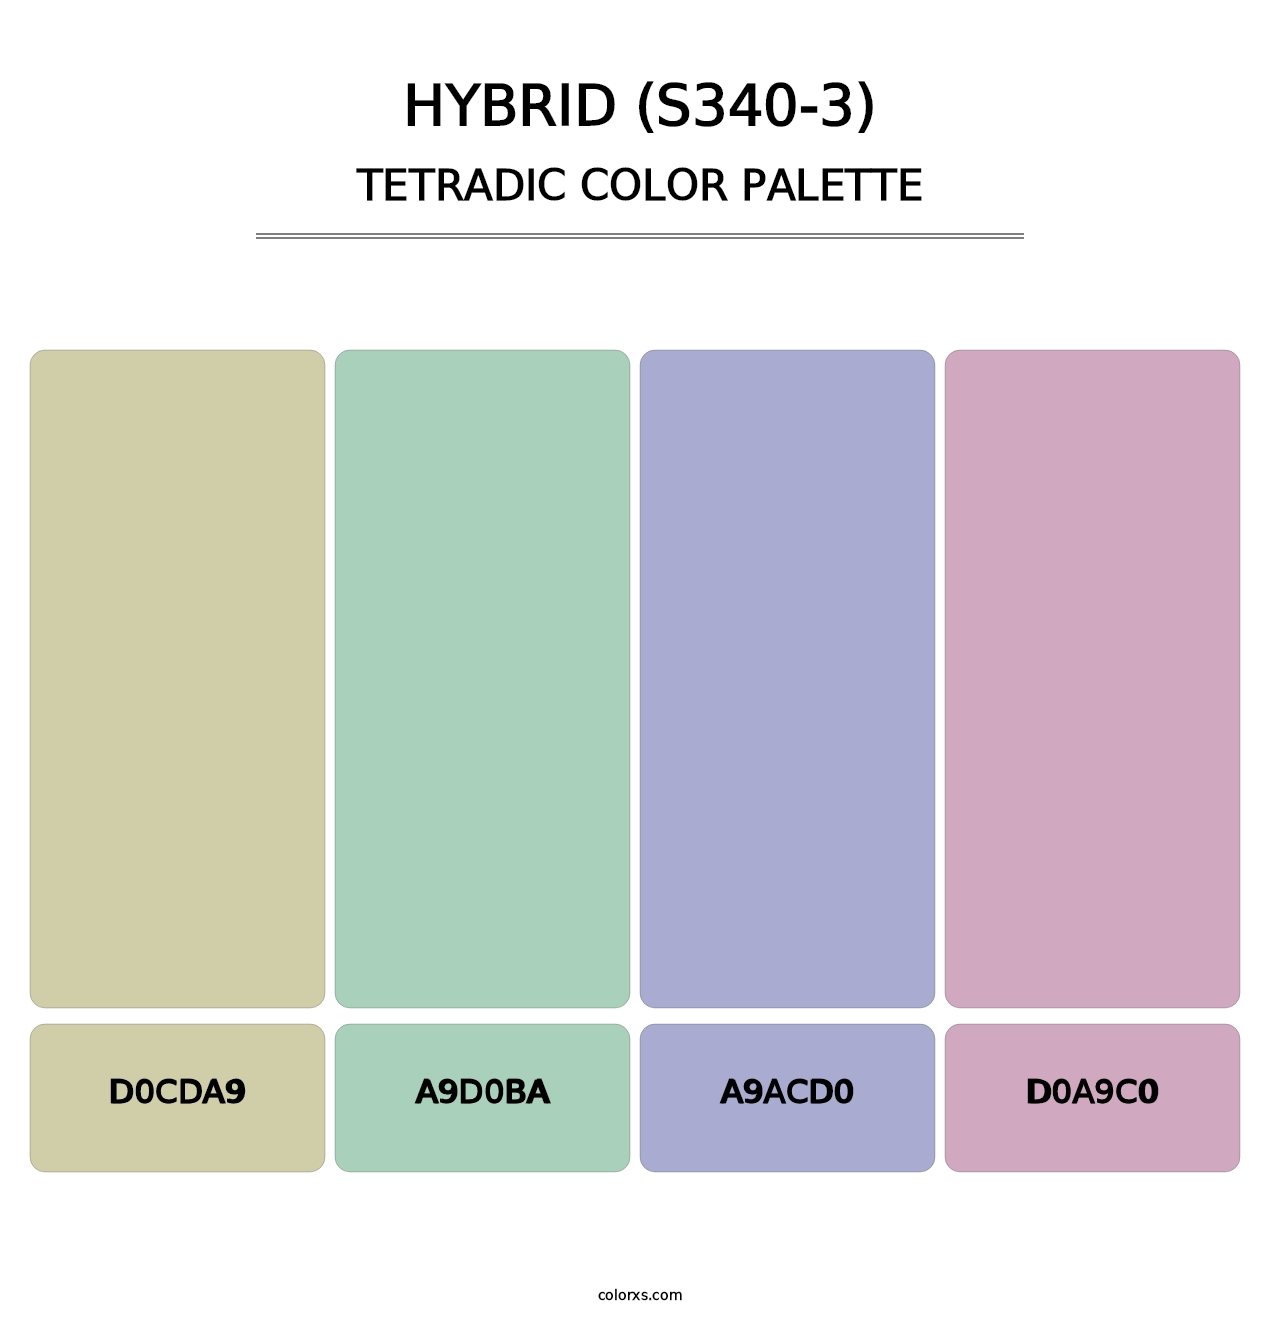 Hybrid (S340-3) - Tetradic Color Palette